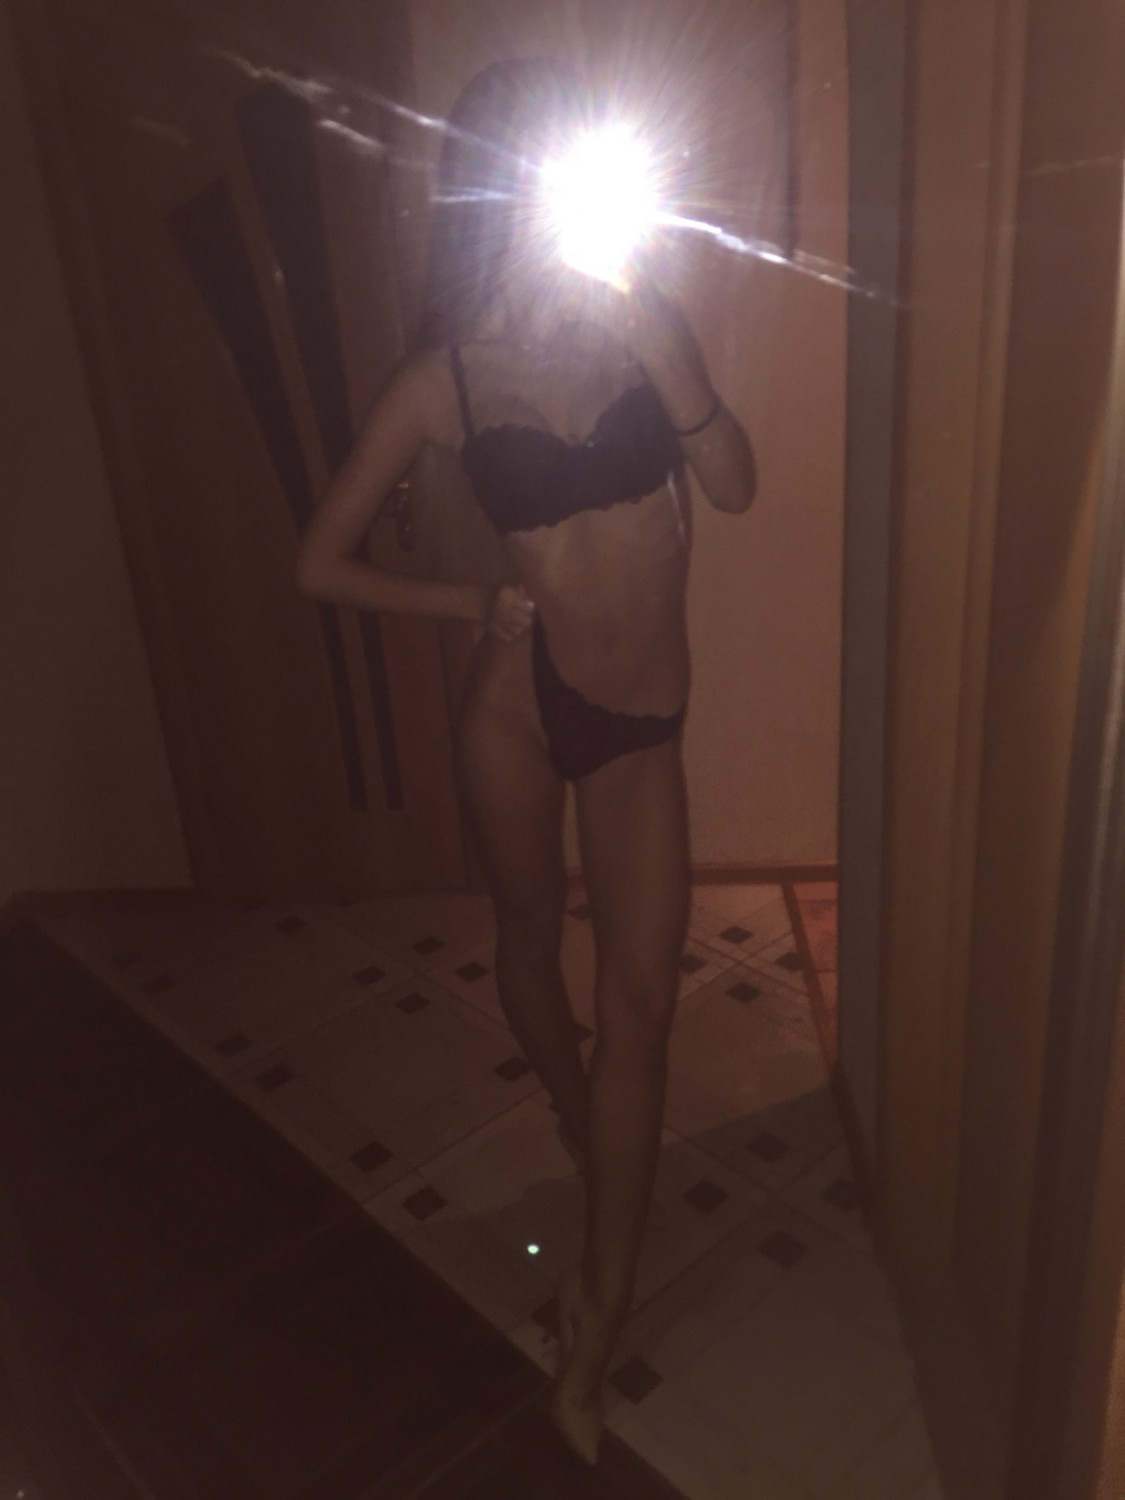 Leaked Nudes of Slim, Hot Blonde Teen - Porn